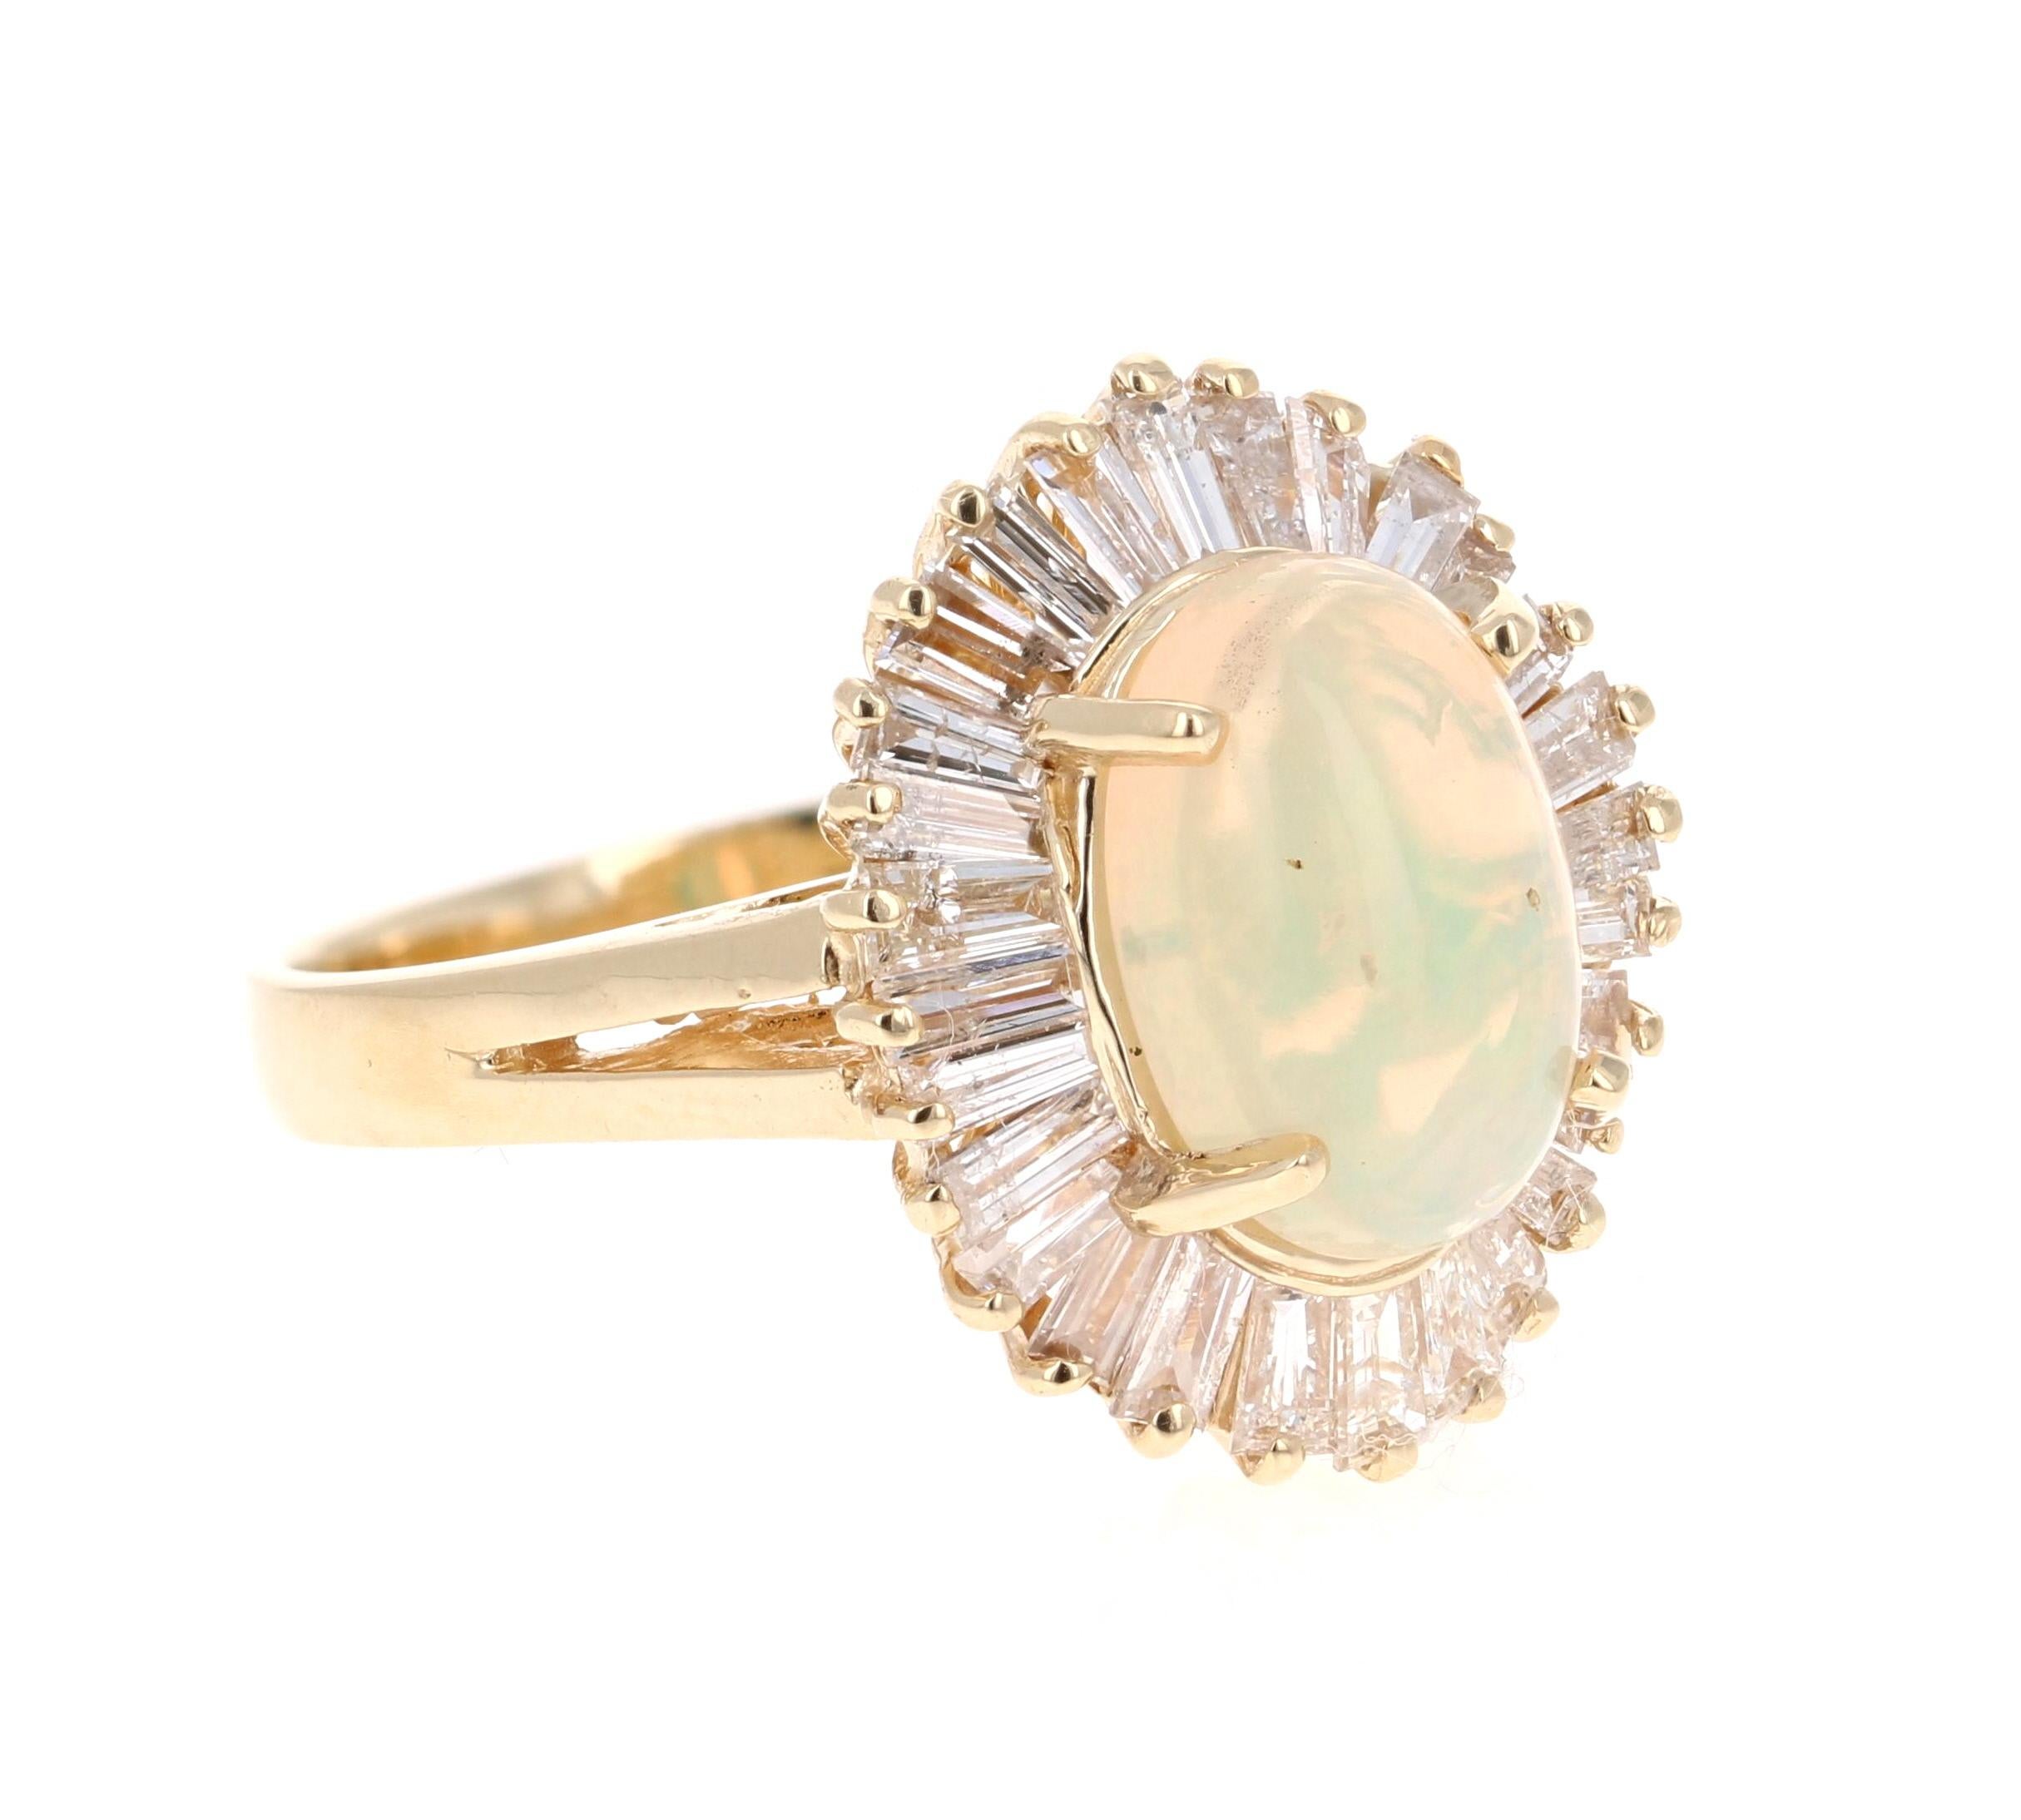 Klassischer Ballerina-Design-Opal- und Diamantring!

Dieser klassische Ring hat einen opulenten Opal von 1::88 Karat in der Mitte des Rings.  Der Opal zeigt Blitze in Grün- und Orangetönen.  Der Opal ist von einer Reihe von 38 Diamanten im